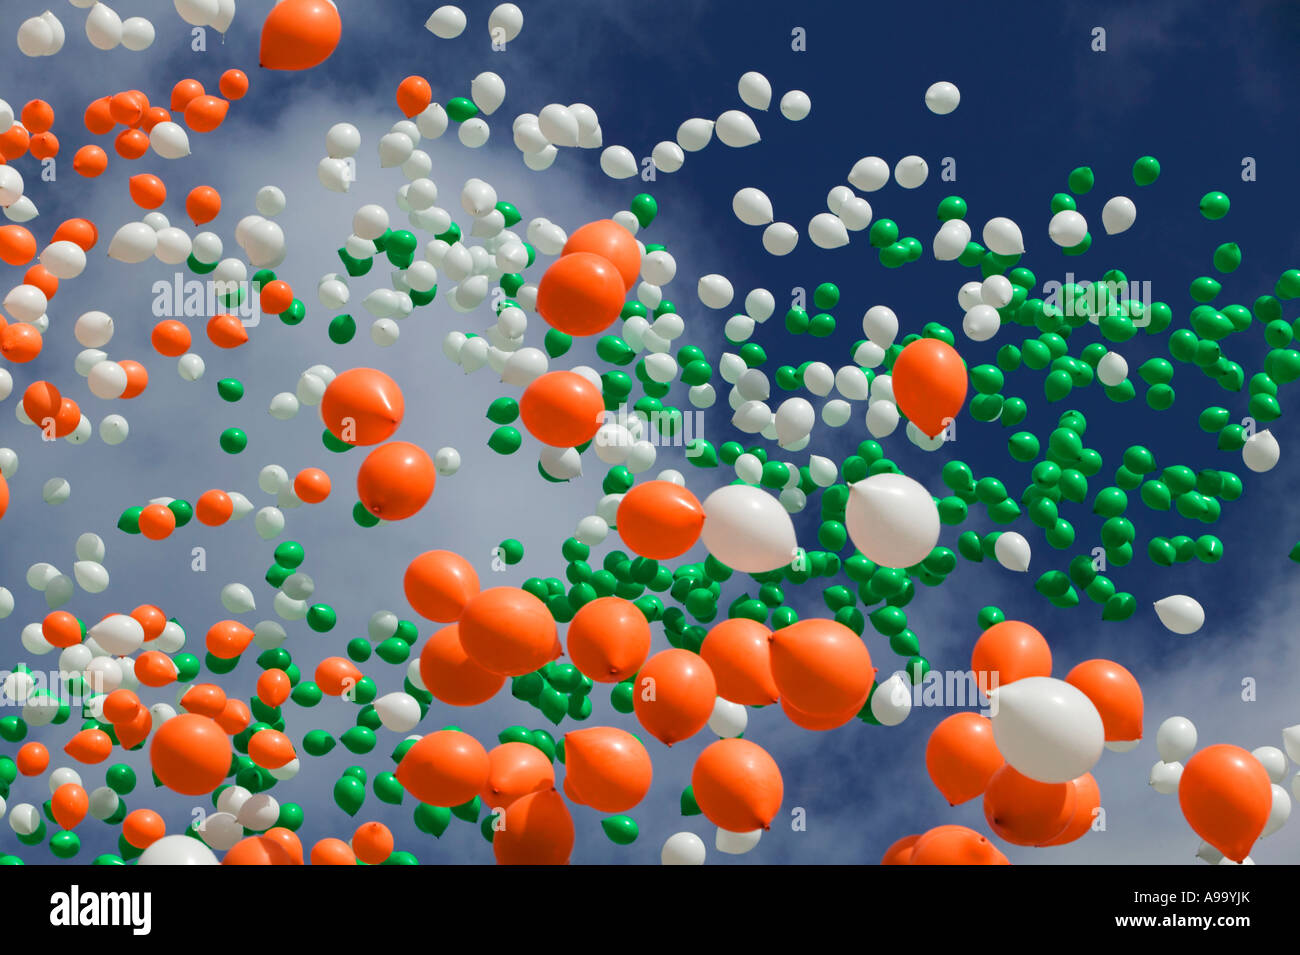 Grün, orange und weiße Luftballons steigen in den Himmel am St. Patricks Day Celebrations Stockfoto